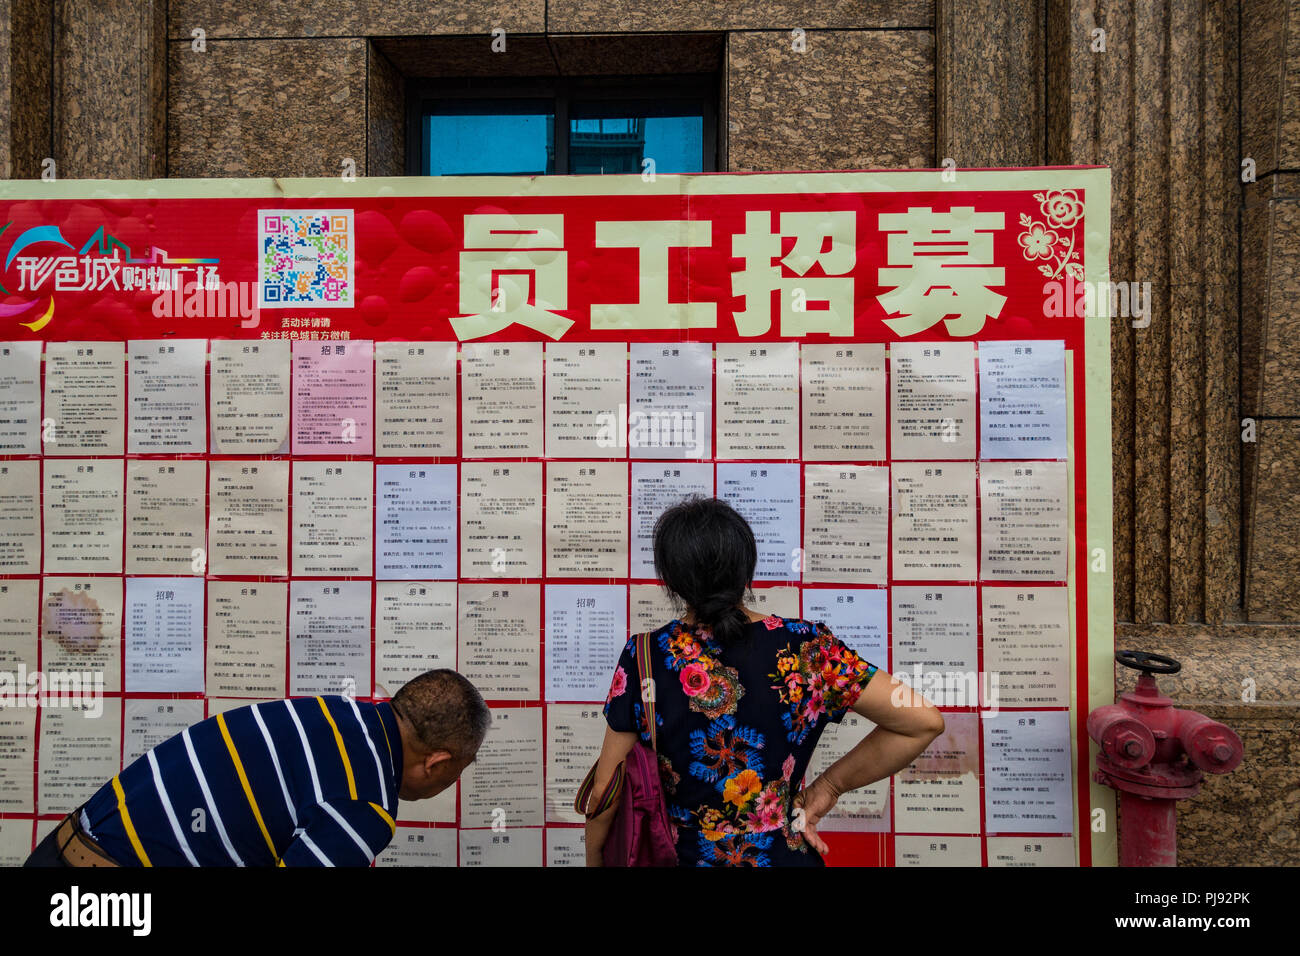 Le vieillissement d'emploi à la recherche d'emploi au babillard dans Shenzhen Chine Banque D'Images